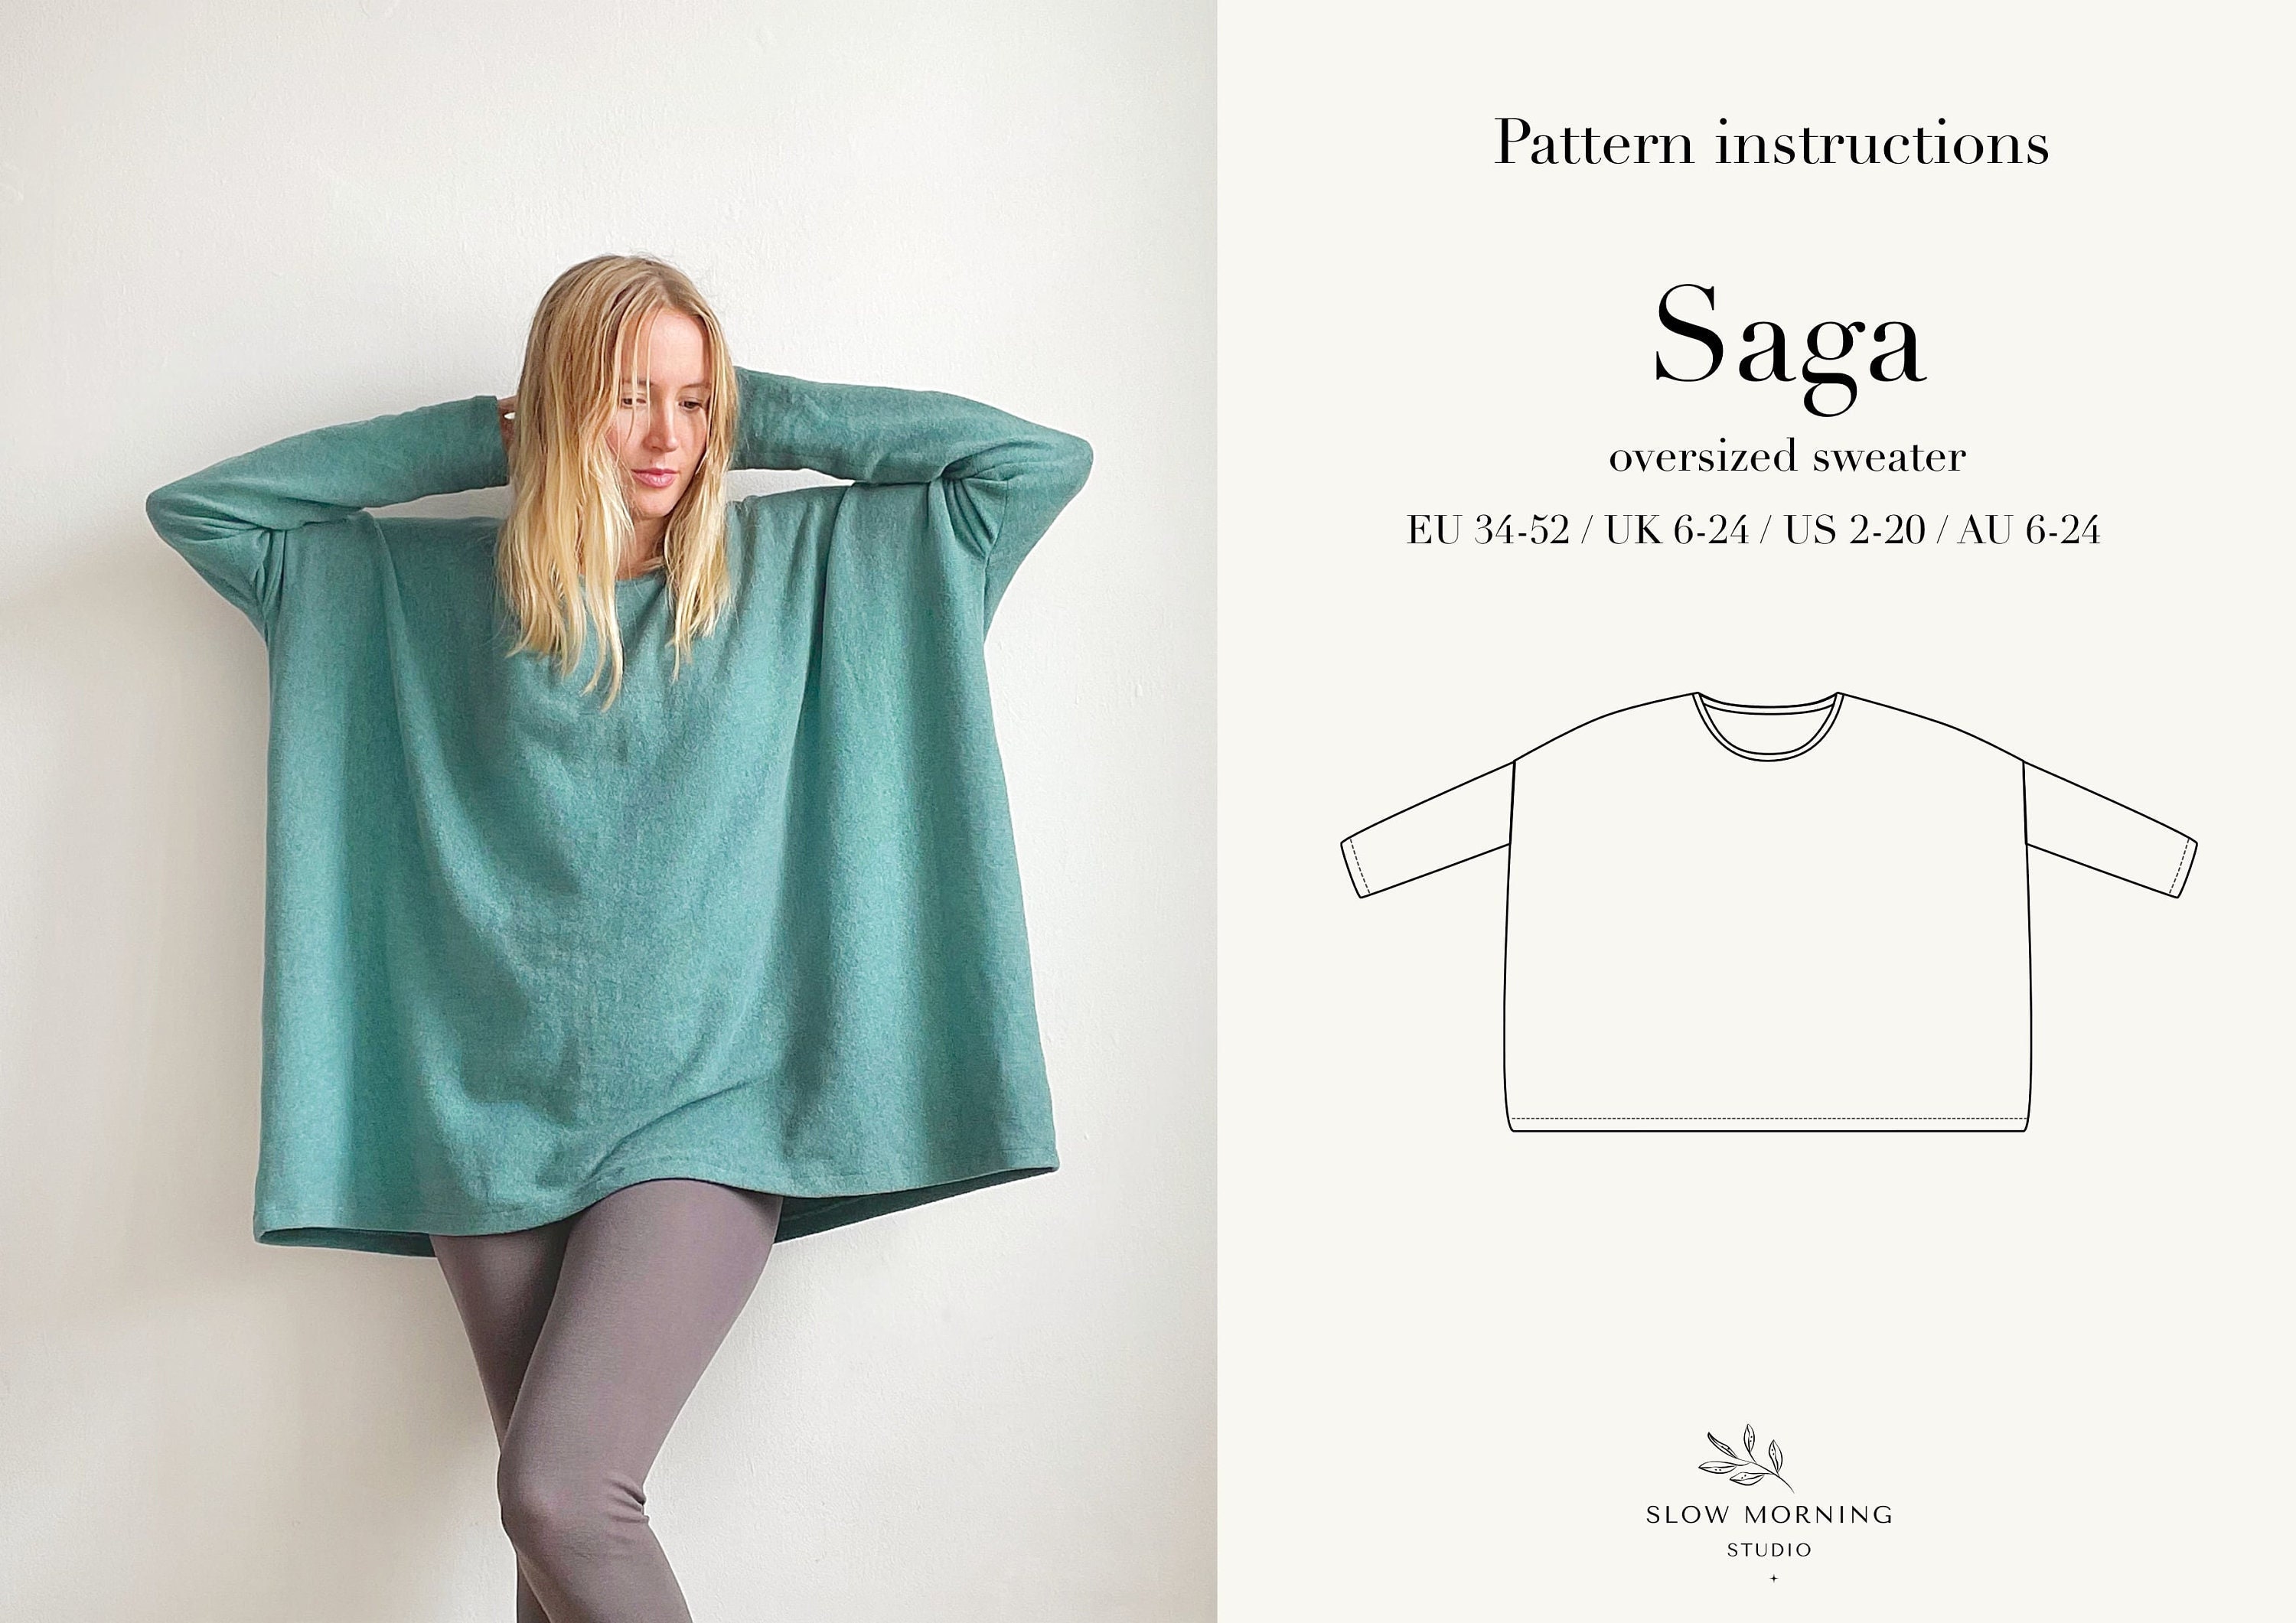 Digital Sweater - for Shirt Oversized Etsy Pattern Sewing Pattern, PDF Pattern, Sewing Sewing Sewing Pattern Loungewear Oversized Women,